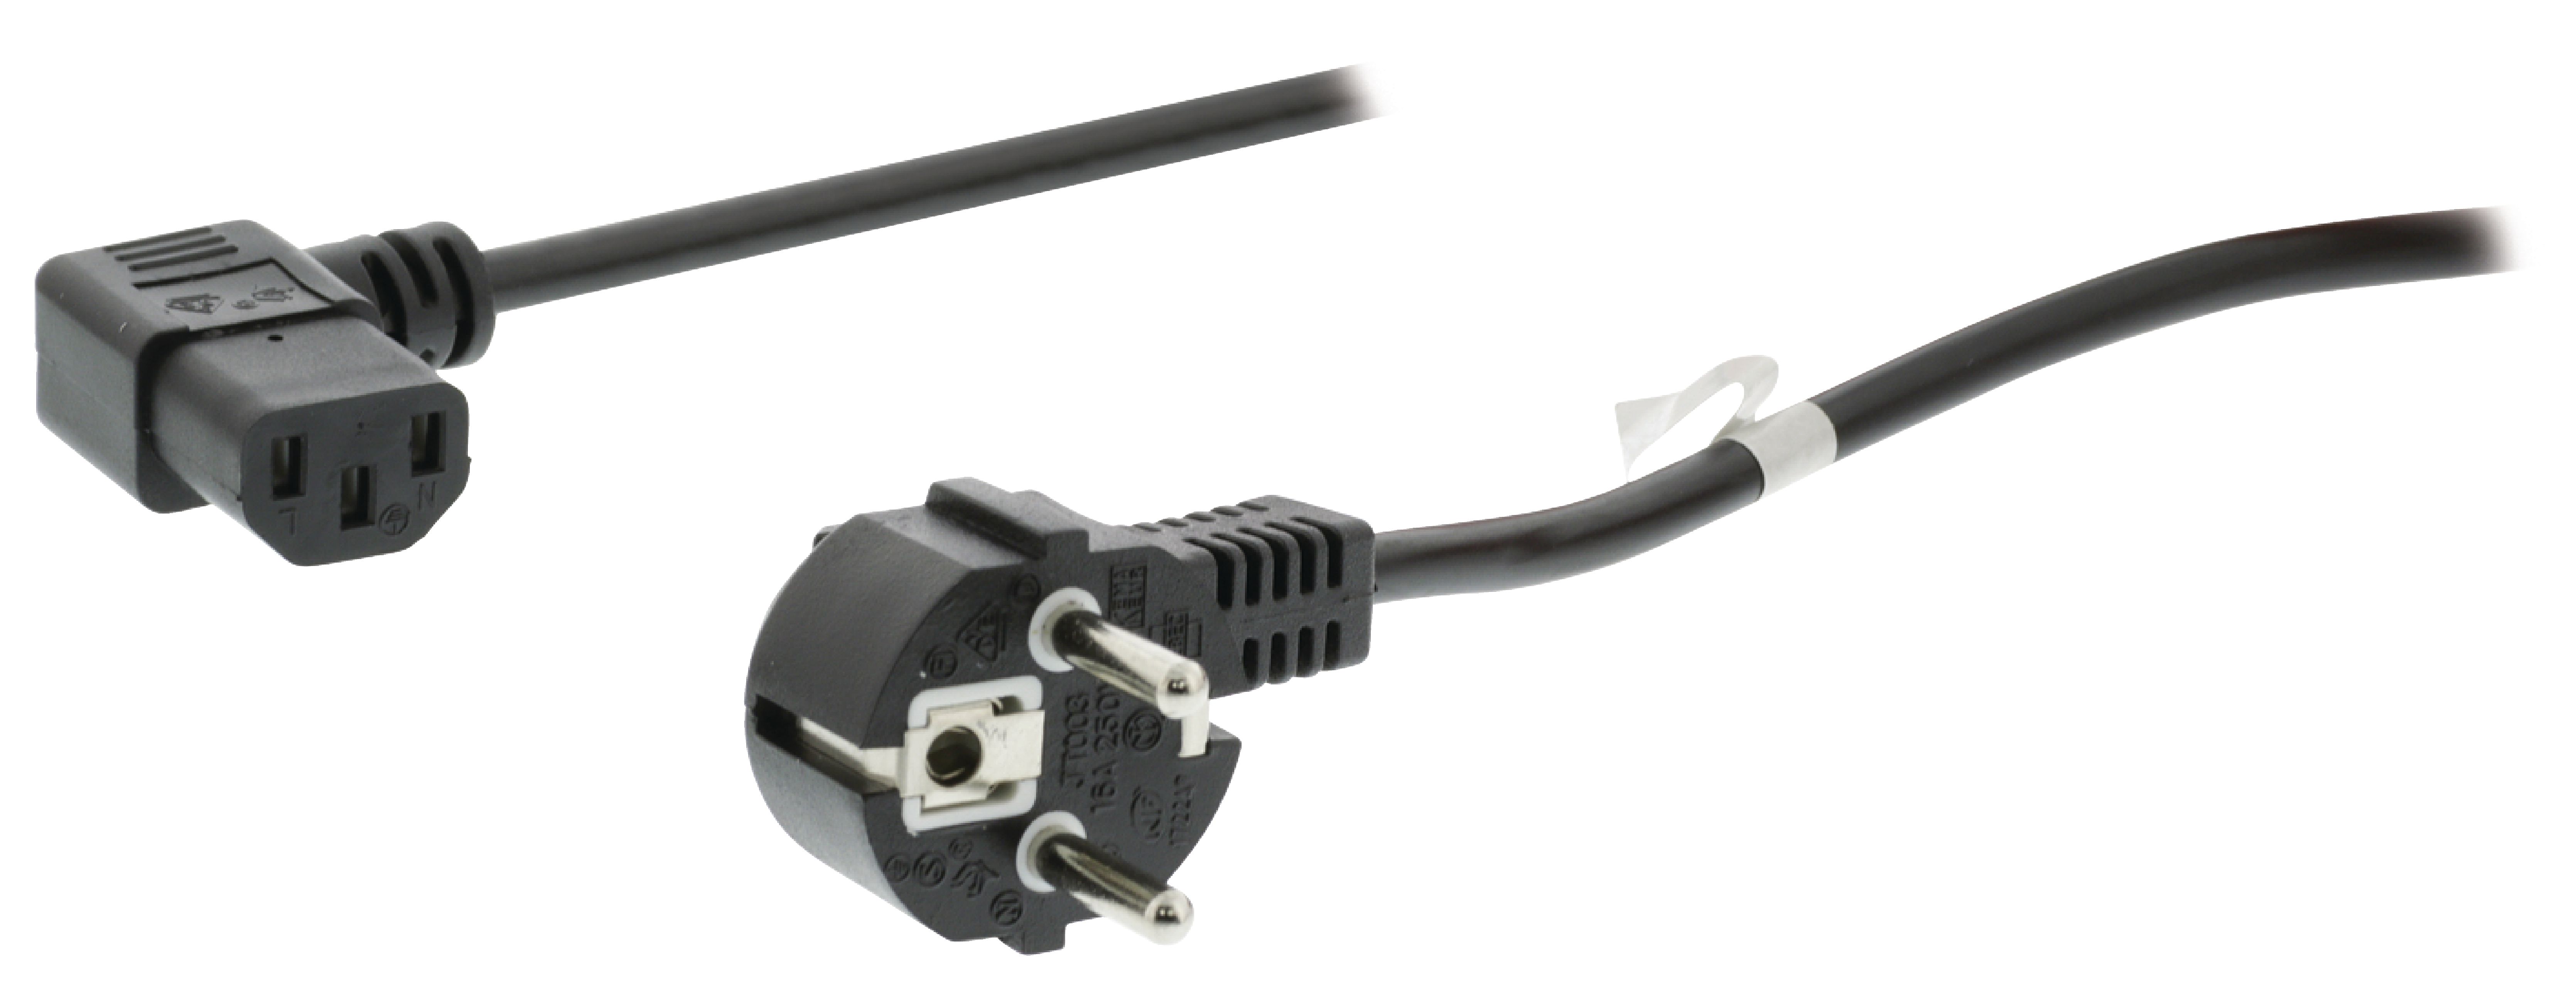 E44-Câble d'alimentation avec fiche coudée l=1.80m noir à 4,90 €